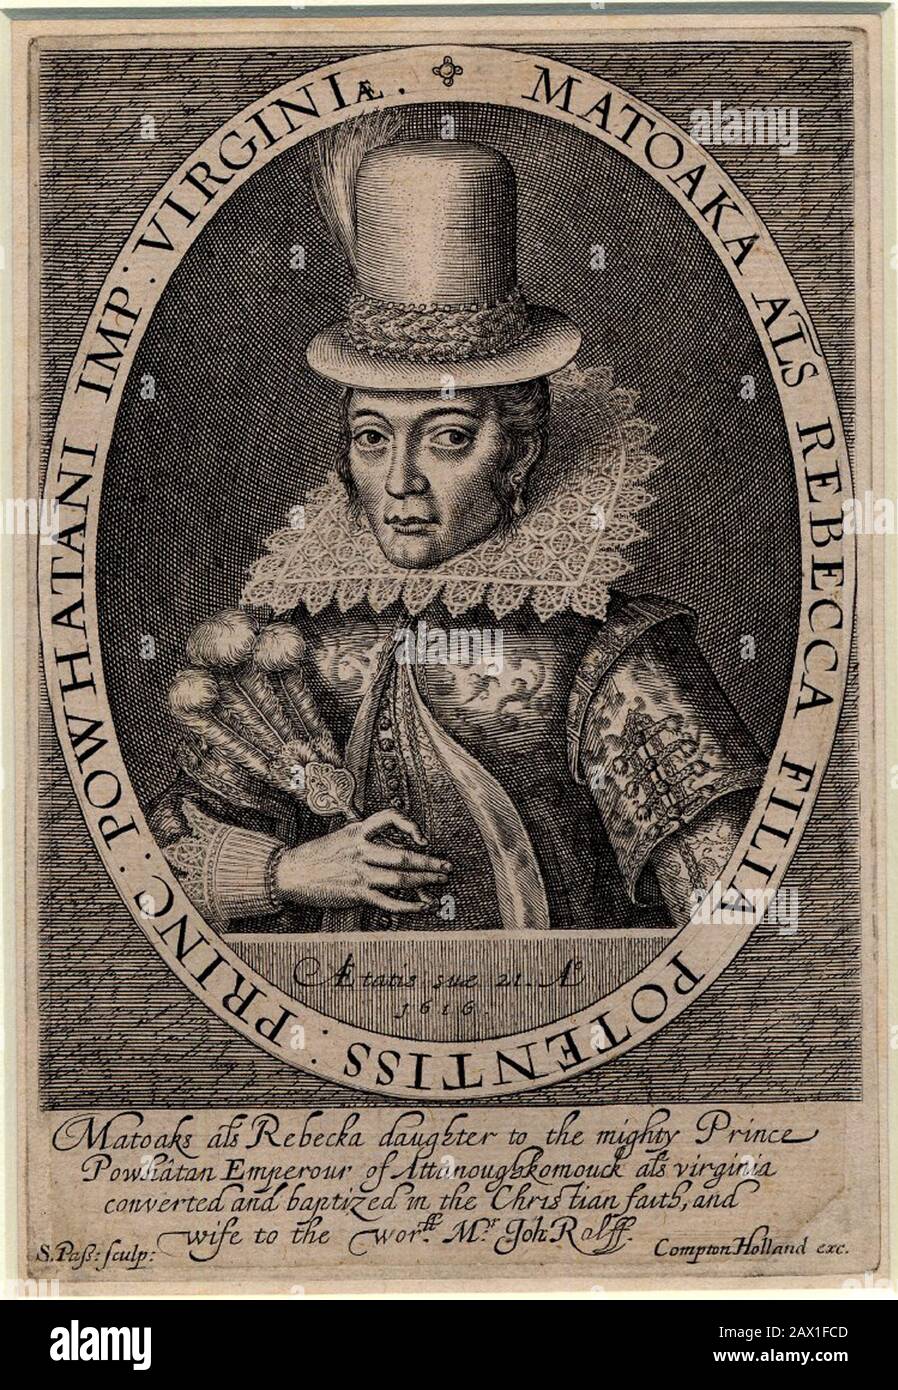 1616, GROSSBRITANNIEN: Pocahontas ( Virginia, 1595 Ca - Gravesend, 21. märz 1617 ) als Frau John Rolfe aus einem Porträtgemälde in London, England, 1616 des Graveurers Simon Van de Passe ( Ca. 1595 - 1647 ). Pocahontas (geborene Matoaka, später bekannt als Rebecca Rolfe, c 1595 - März 1617) war eine Virginia-Inderin. In einer historischen Anekdote soll sie einem Inder, dem Engländer John Smith, das Leben gerettet haben. 1607 legte sie ihren Kopf auf sich, als ihr Vater seinen Kriegsverein aufzog, um ihn hinauszuführen.- POCAHONTAS - Prinzessin Powhatani - Epopea del Selvaggio WEST - GEBORENE AM Stockfoto